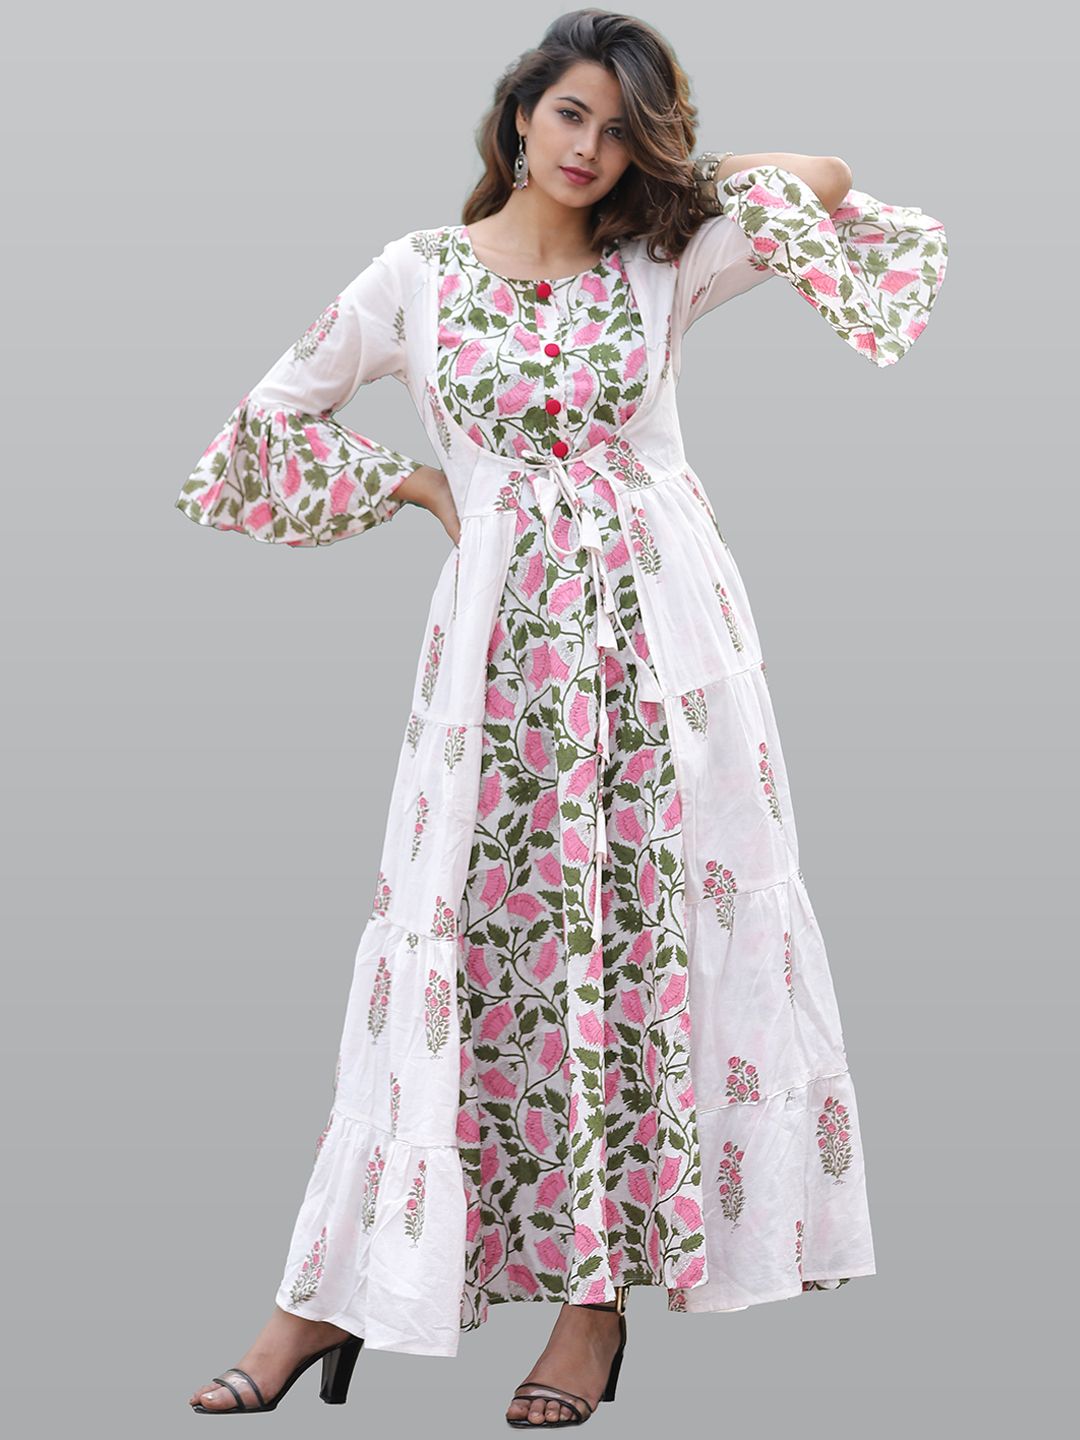 KALINI Women White & Pink Floral Printed Flared Sleeves Floral Anarkali Kurta Price in India